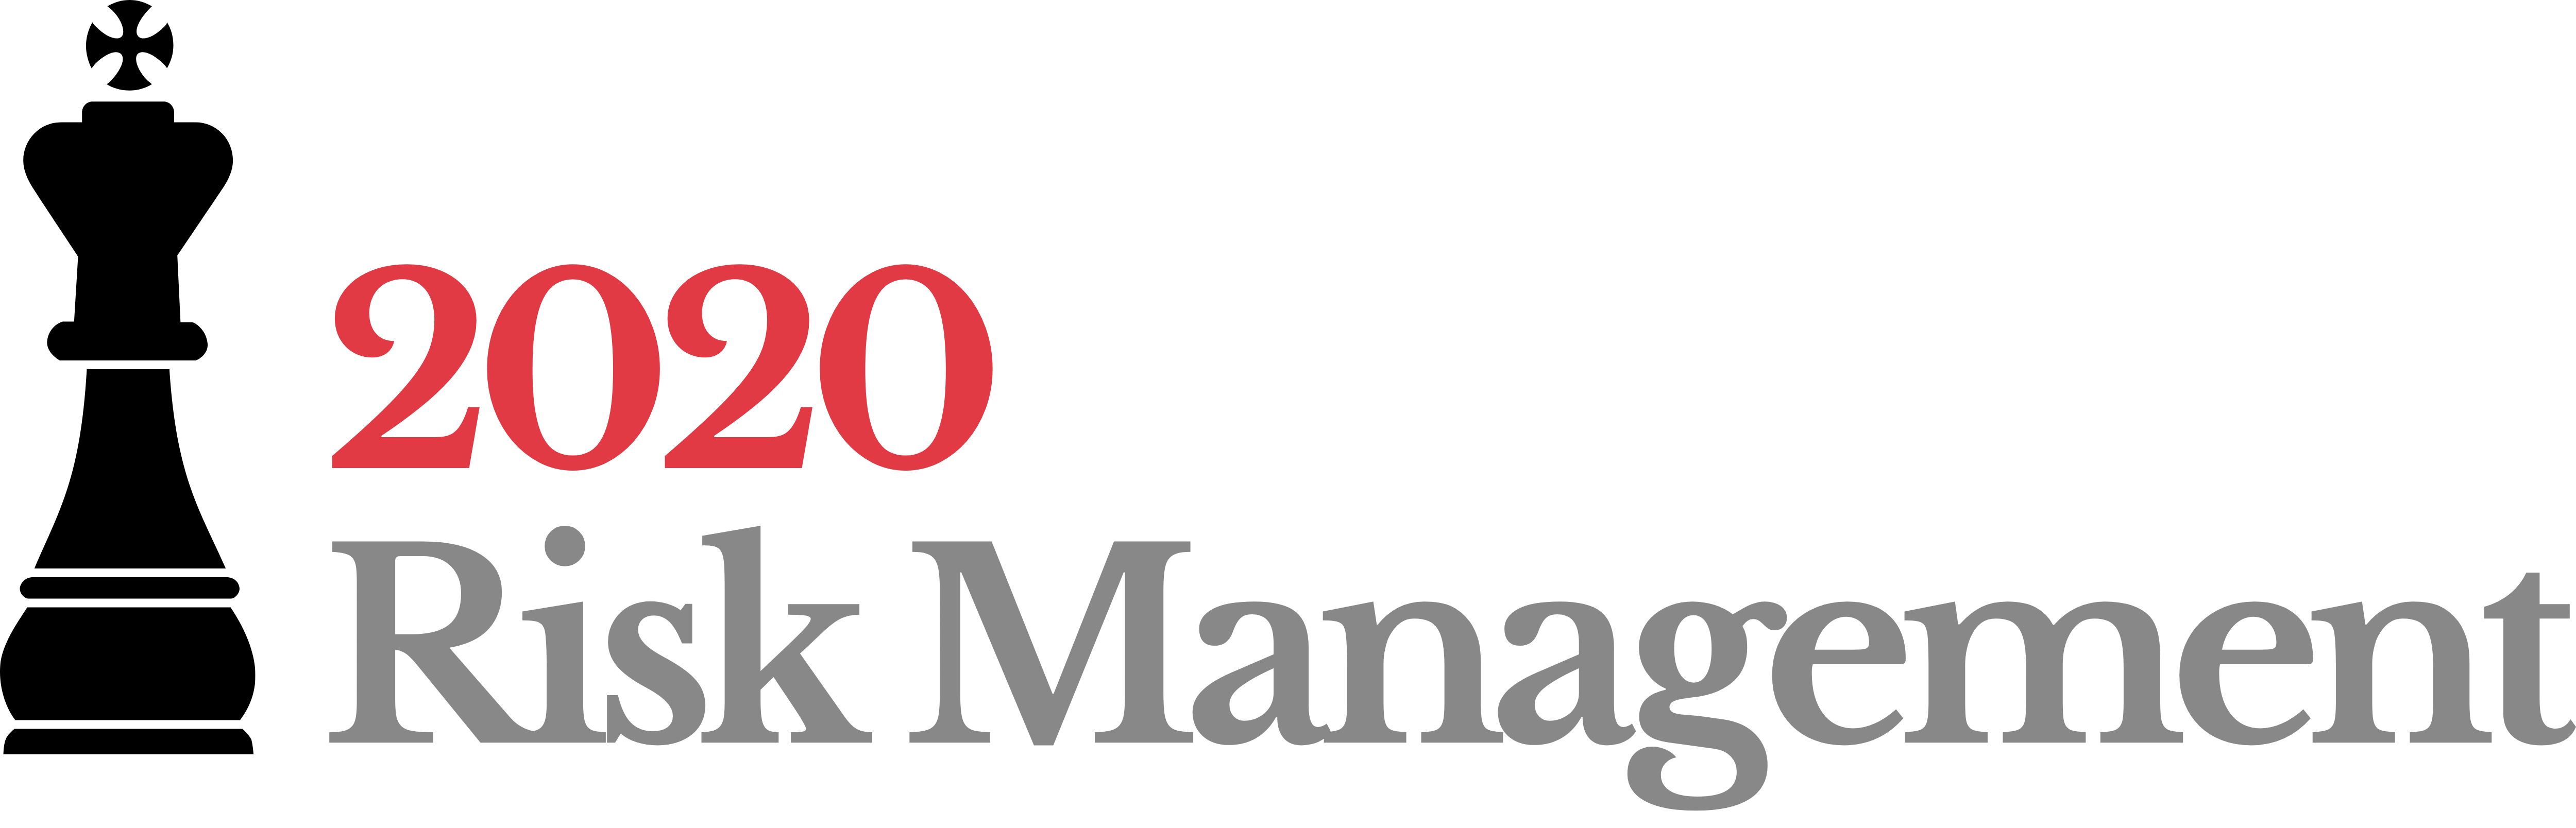 2020 Risk Management logo